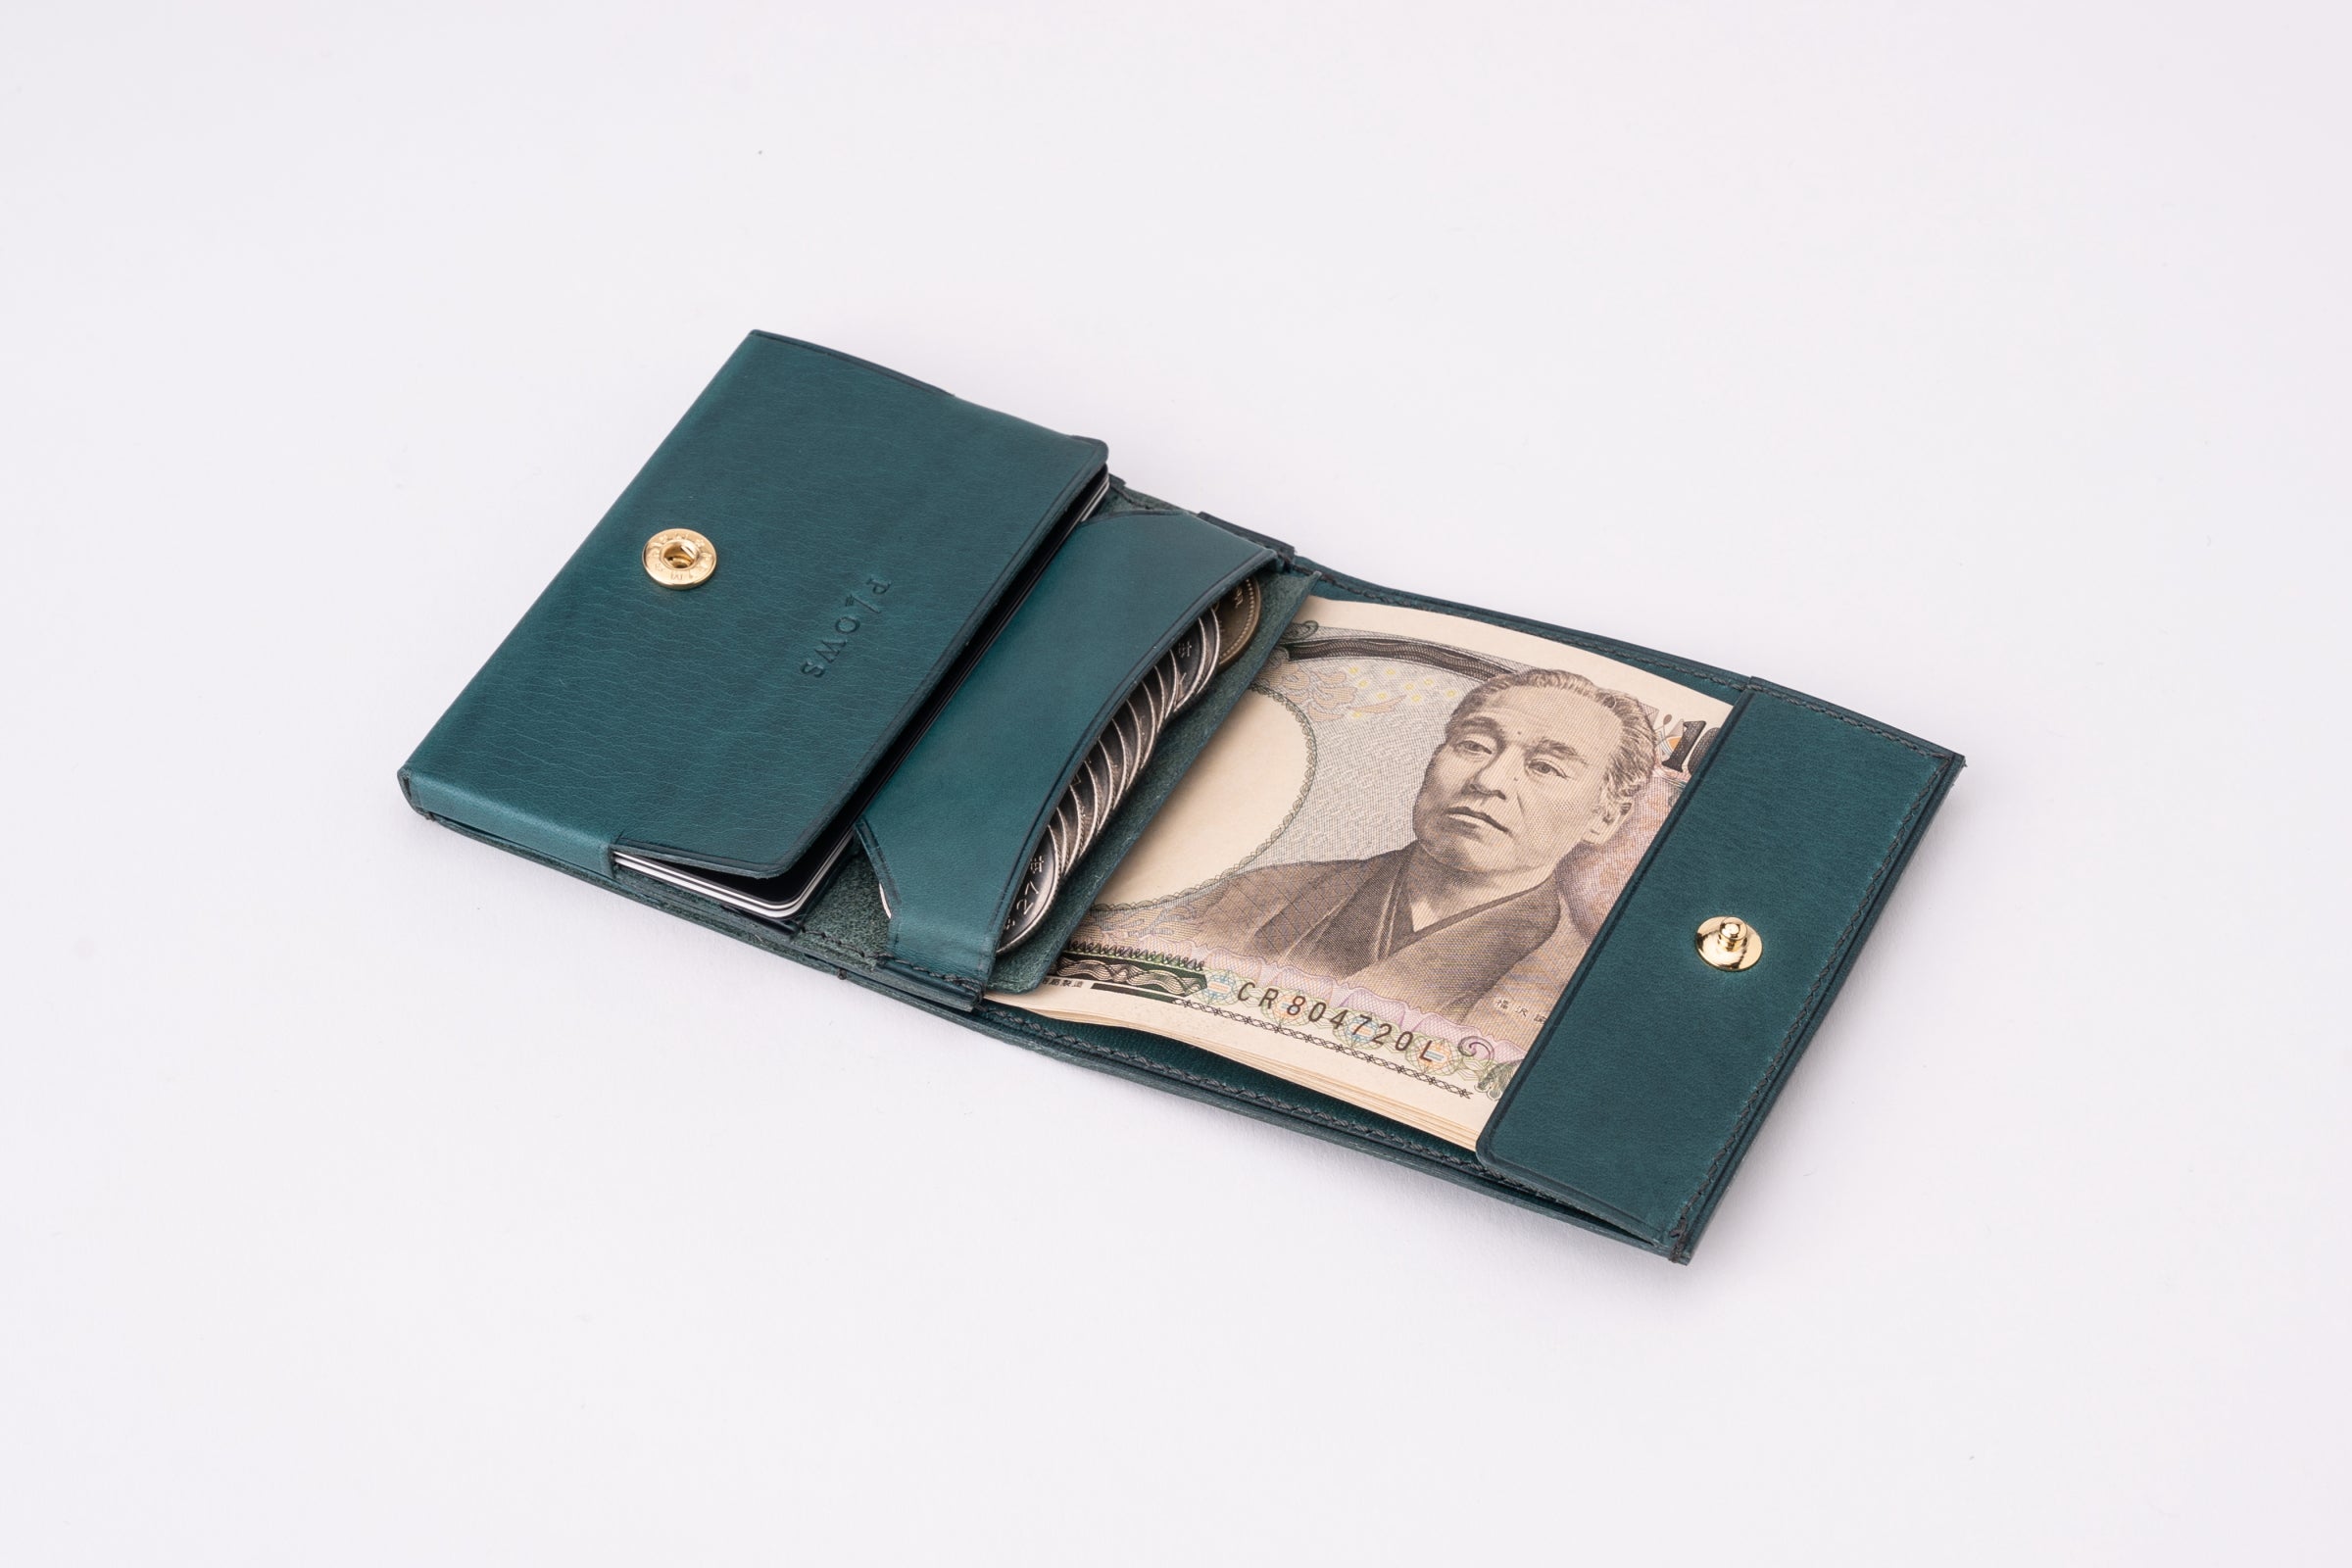 もっと 小さく薄い財布 dritto 2 thin – PLOWS